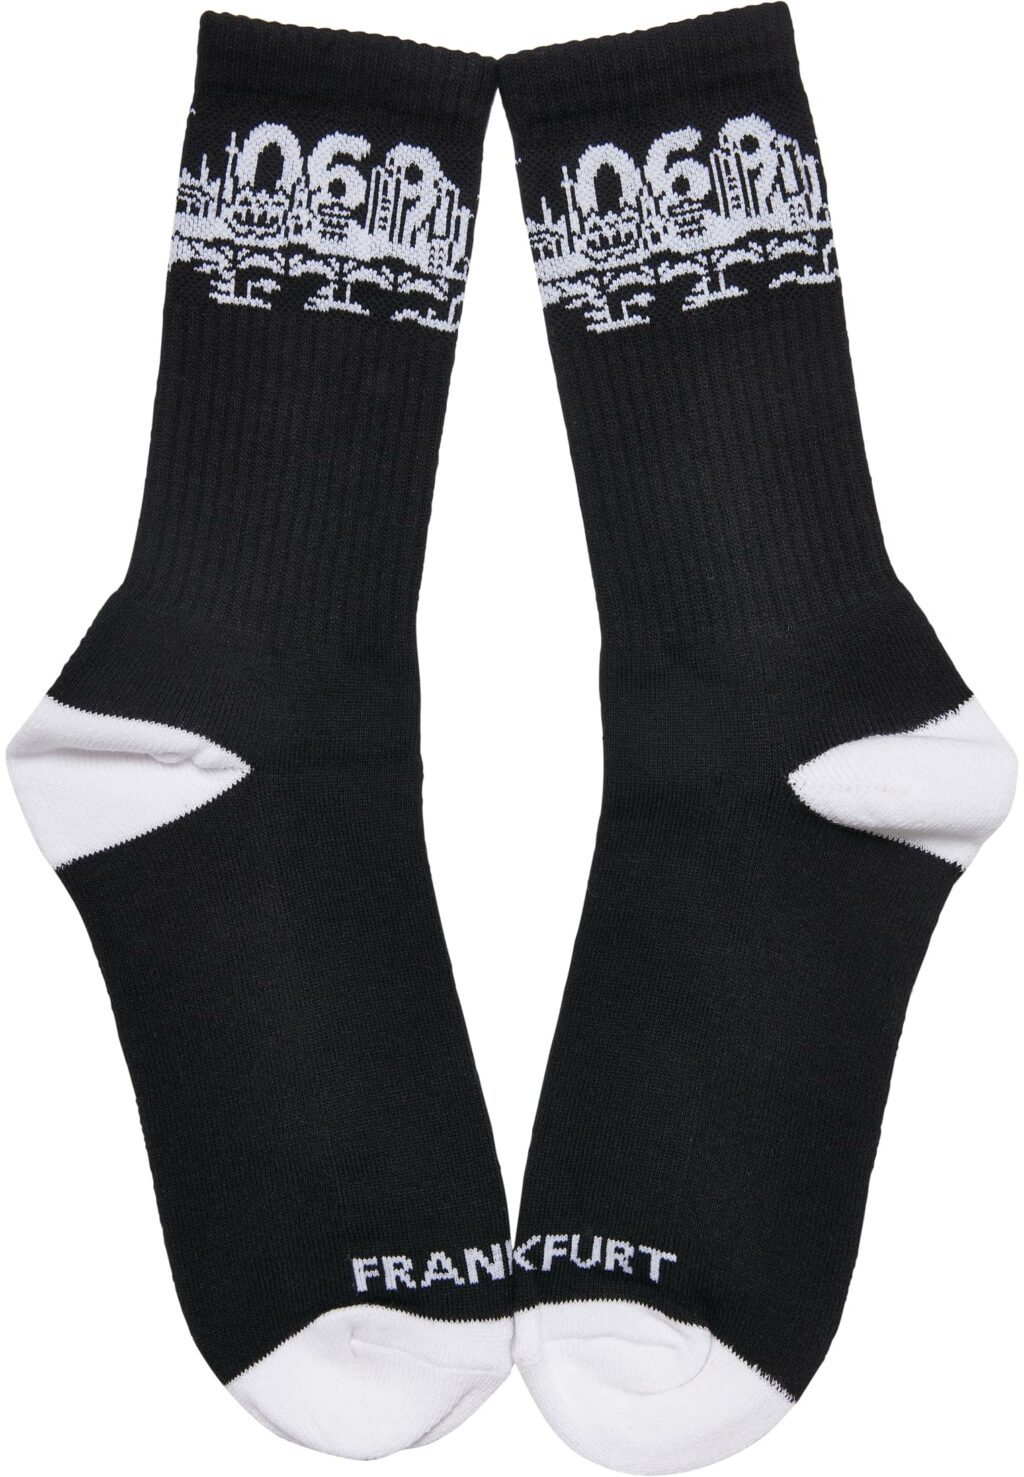 Major City 069 Socks 2-Pack black/white MT2311